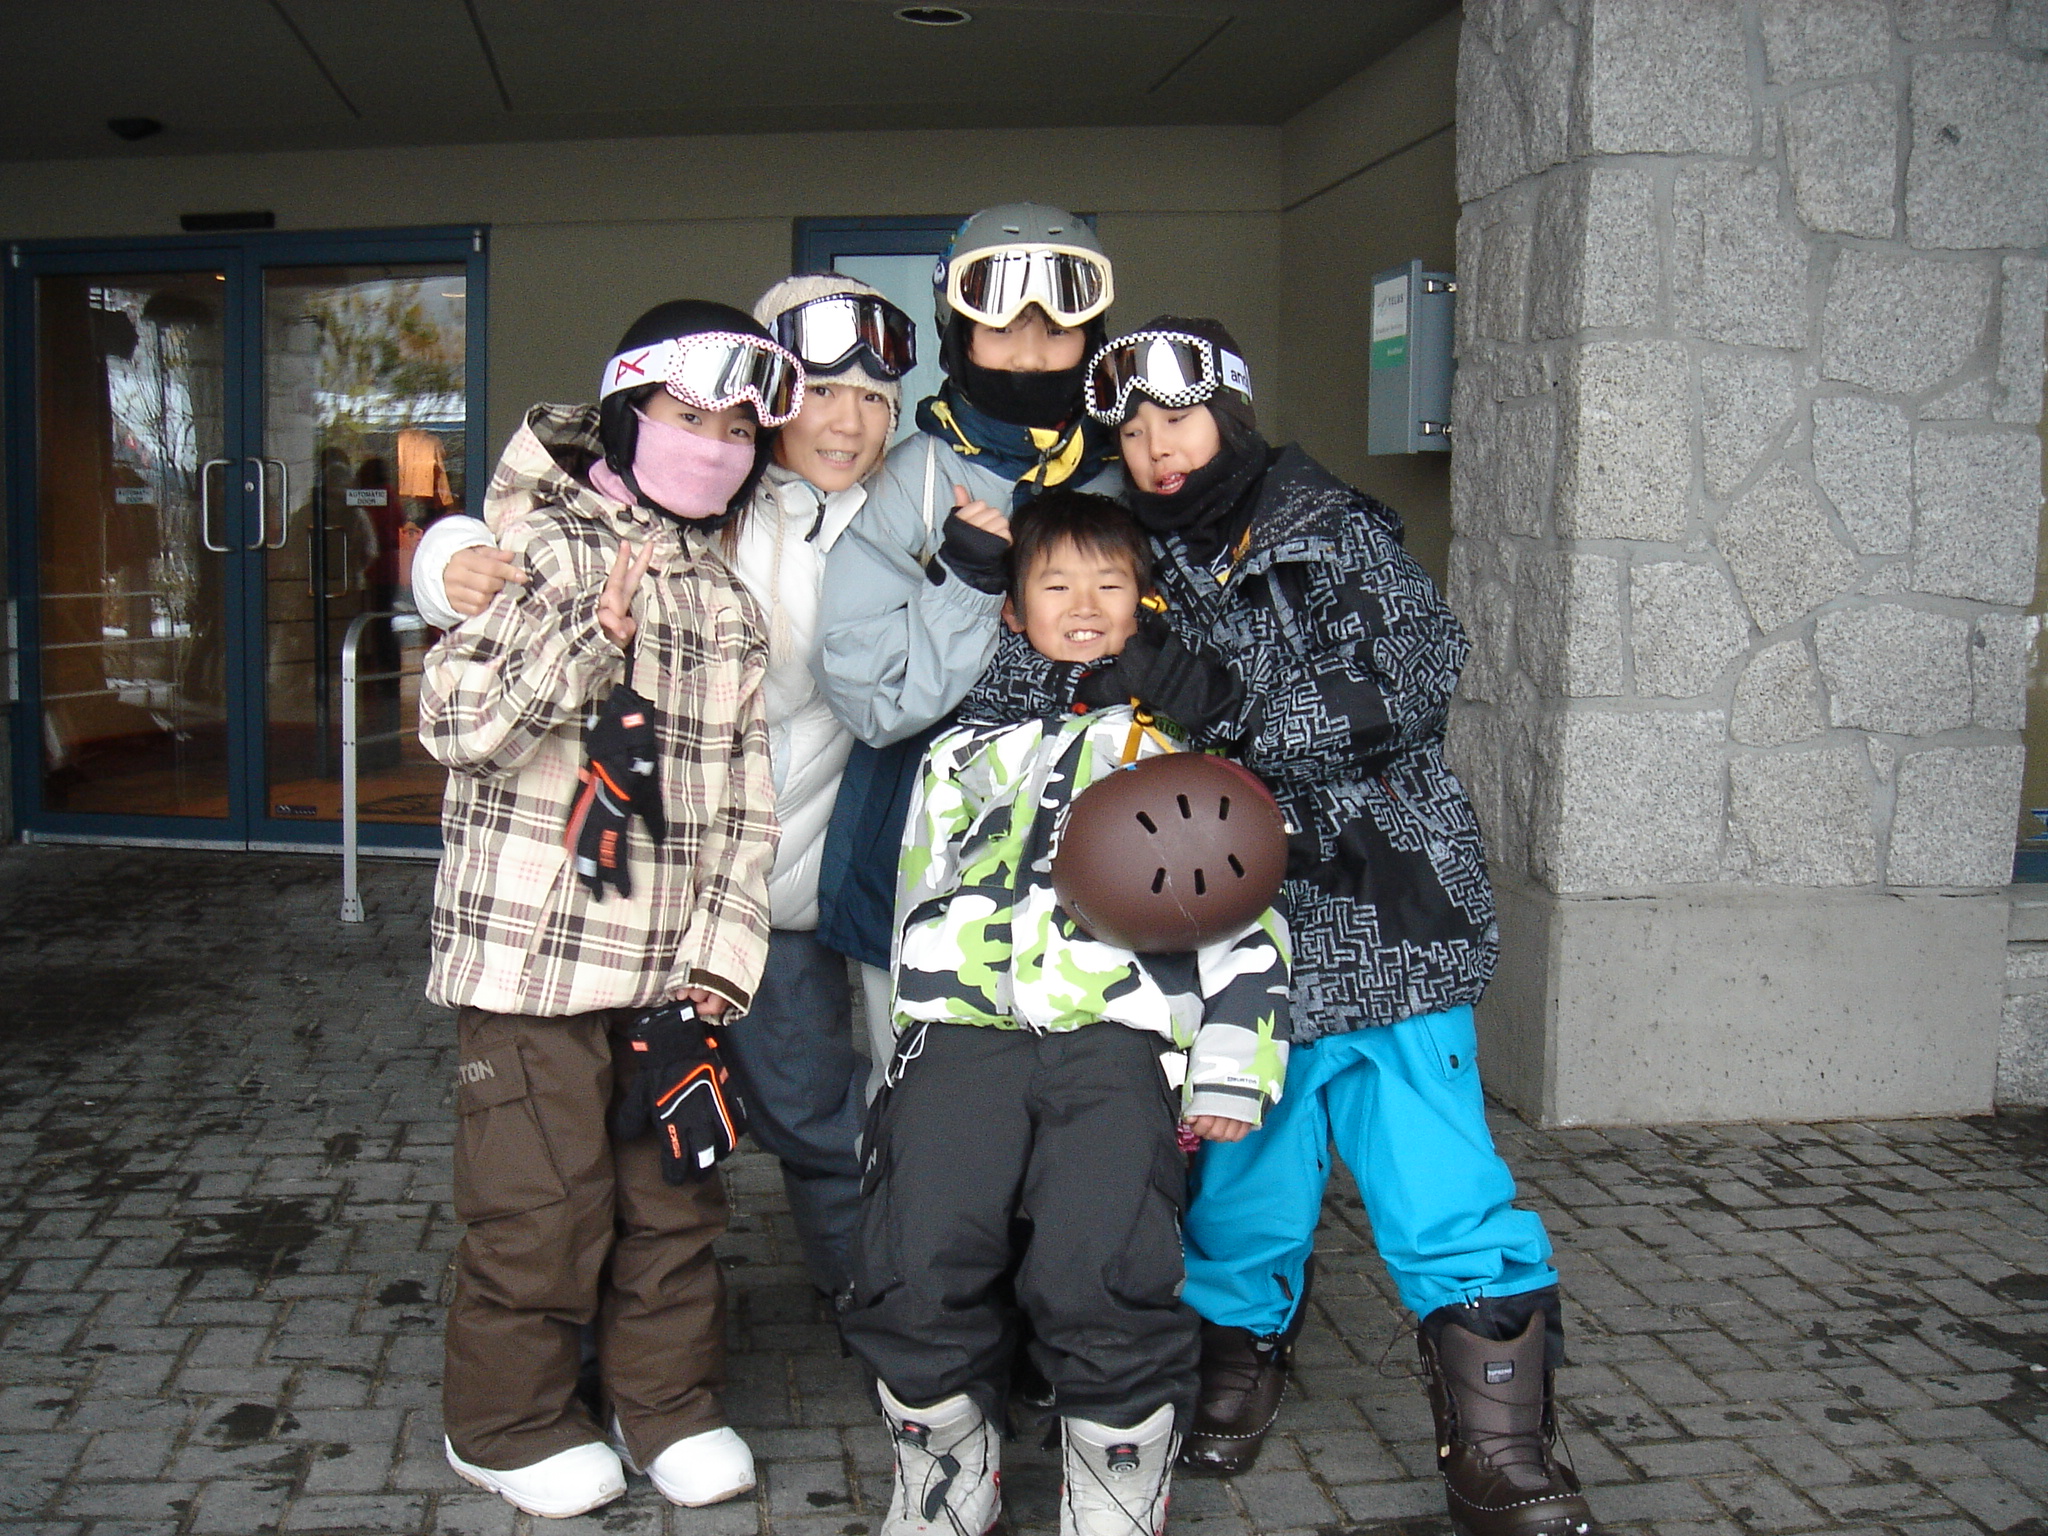 KIRARAにはスノーボードを通して子どもを自立させてくれる環境があり、いろいろなつながりができるきっかけにもなった